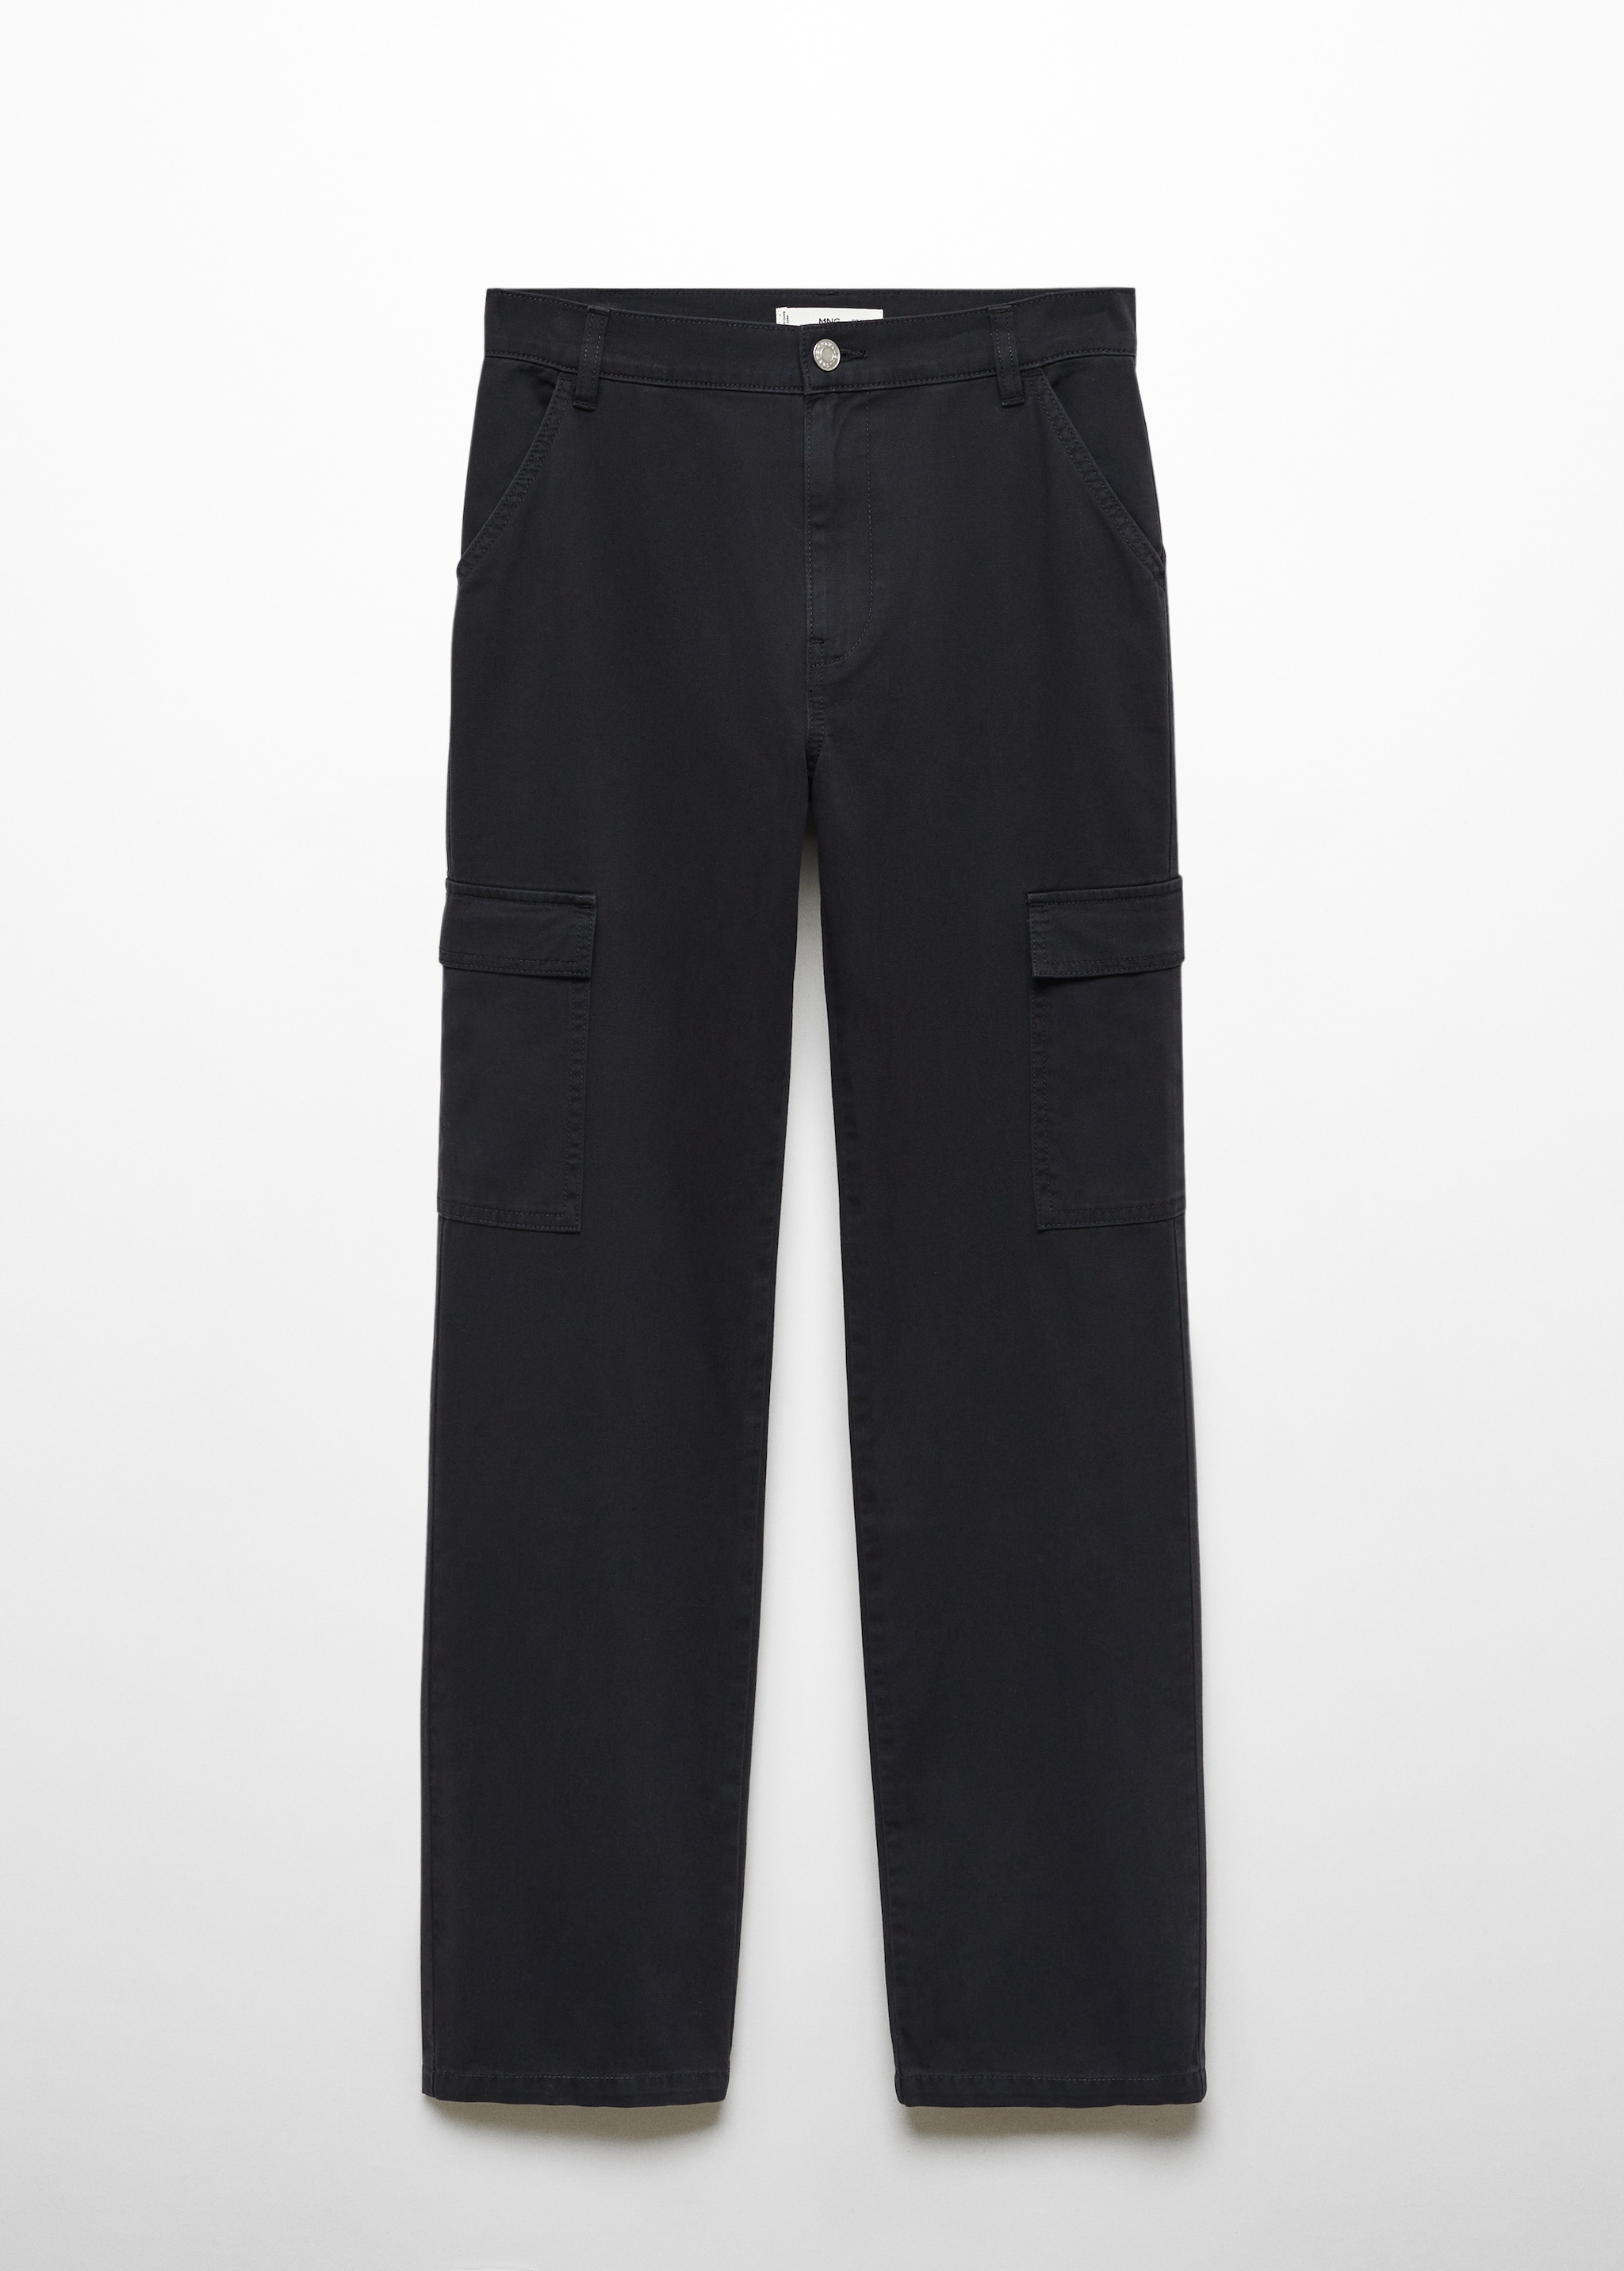 Cepli kargo jean pantolon - Modelsiz ürün